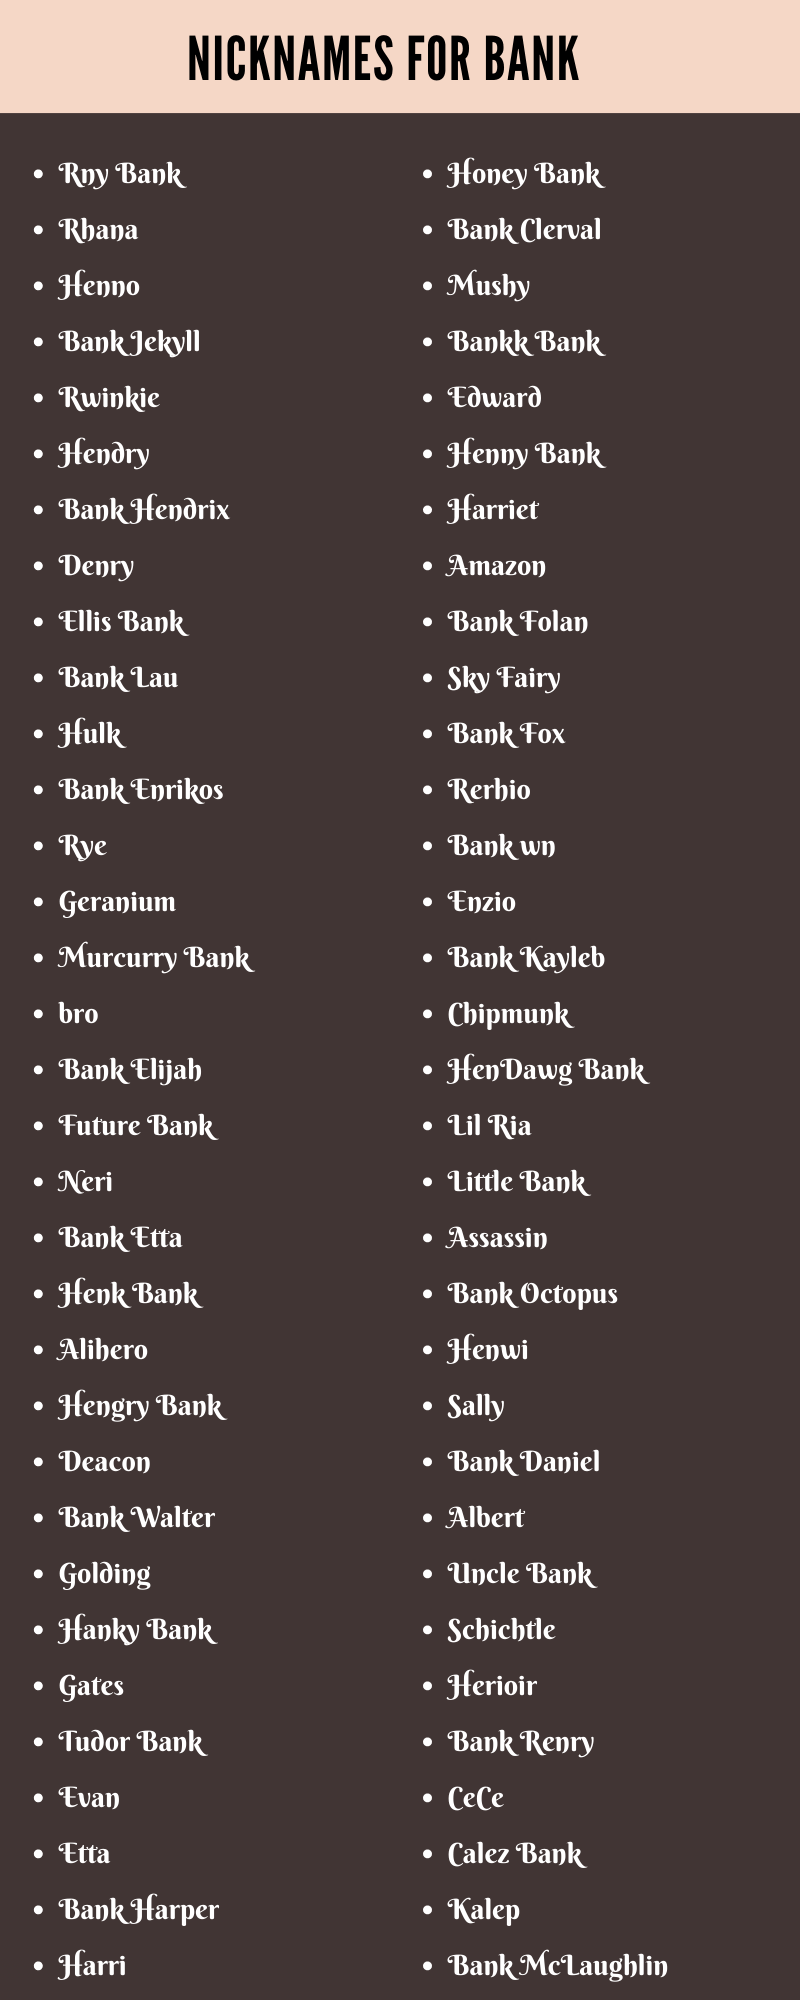 Nicknames For Bank